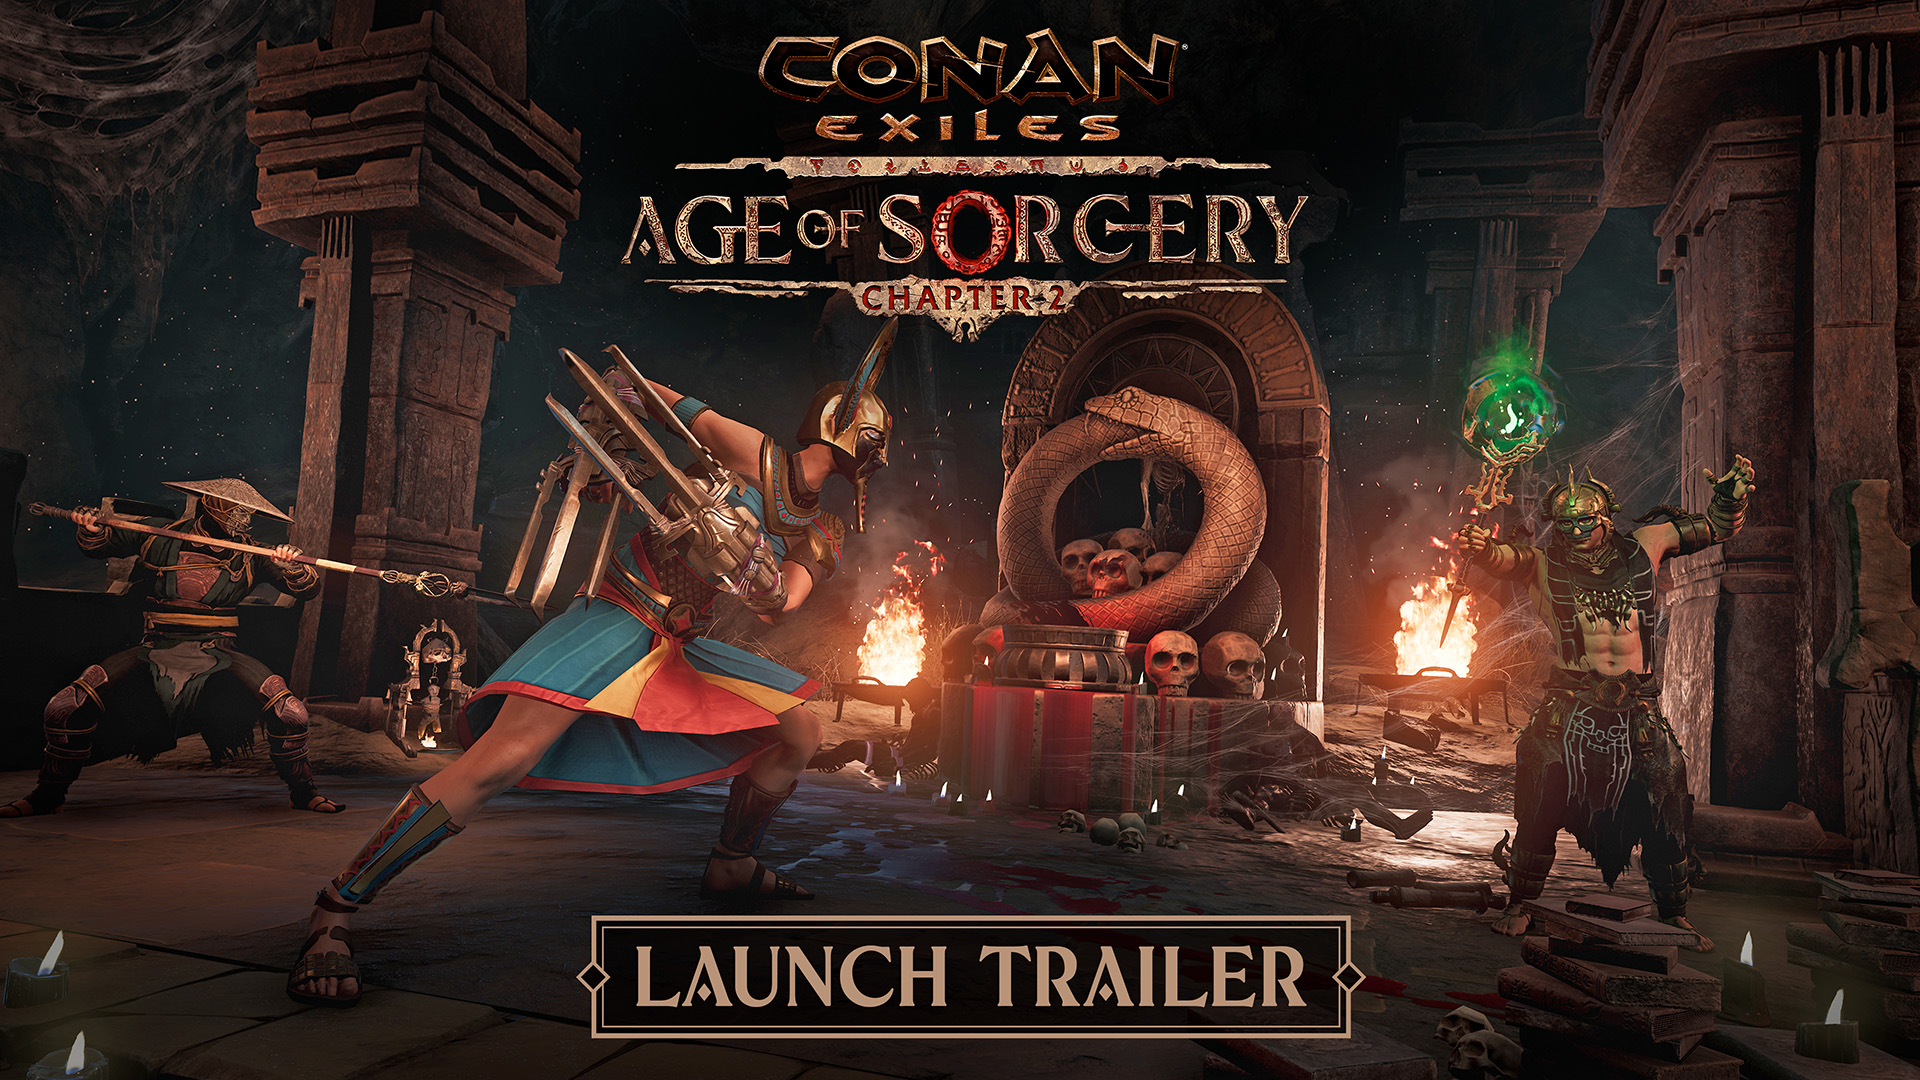 Conan Exiles: Age of Sorcery - Il Capitolo 2 è ora disponibile!